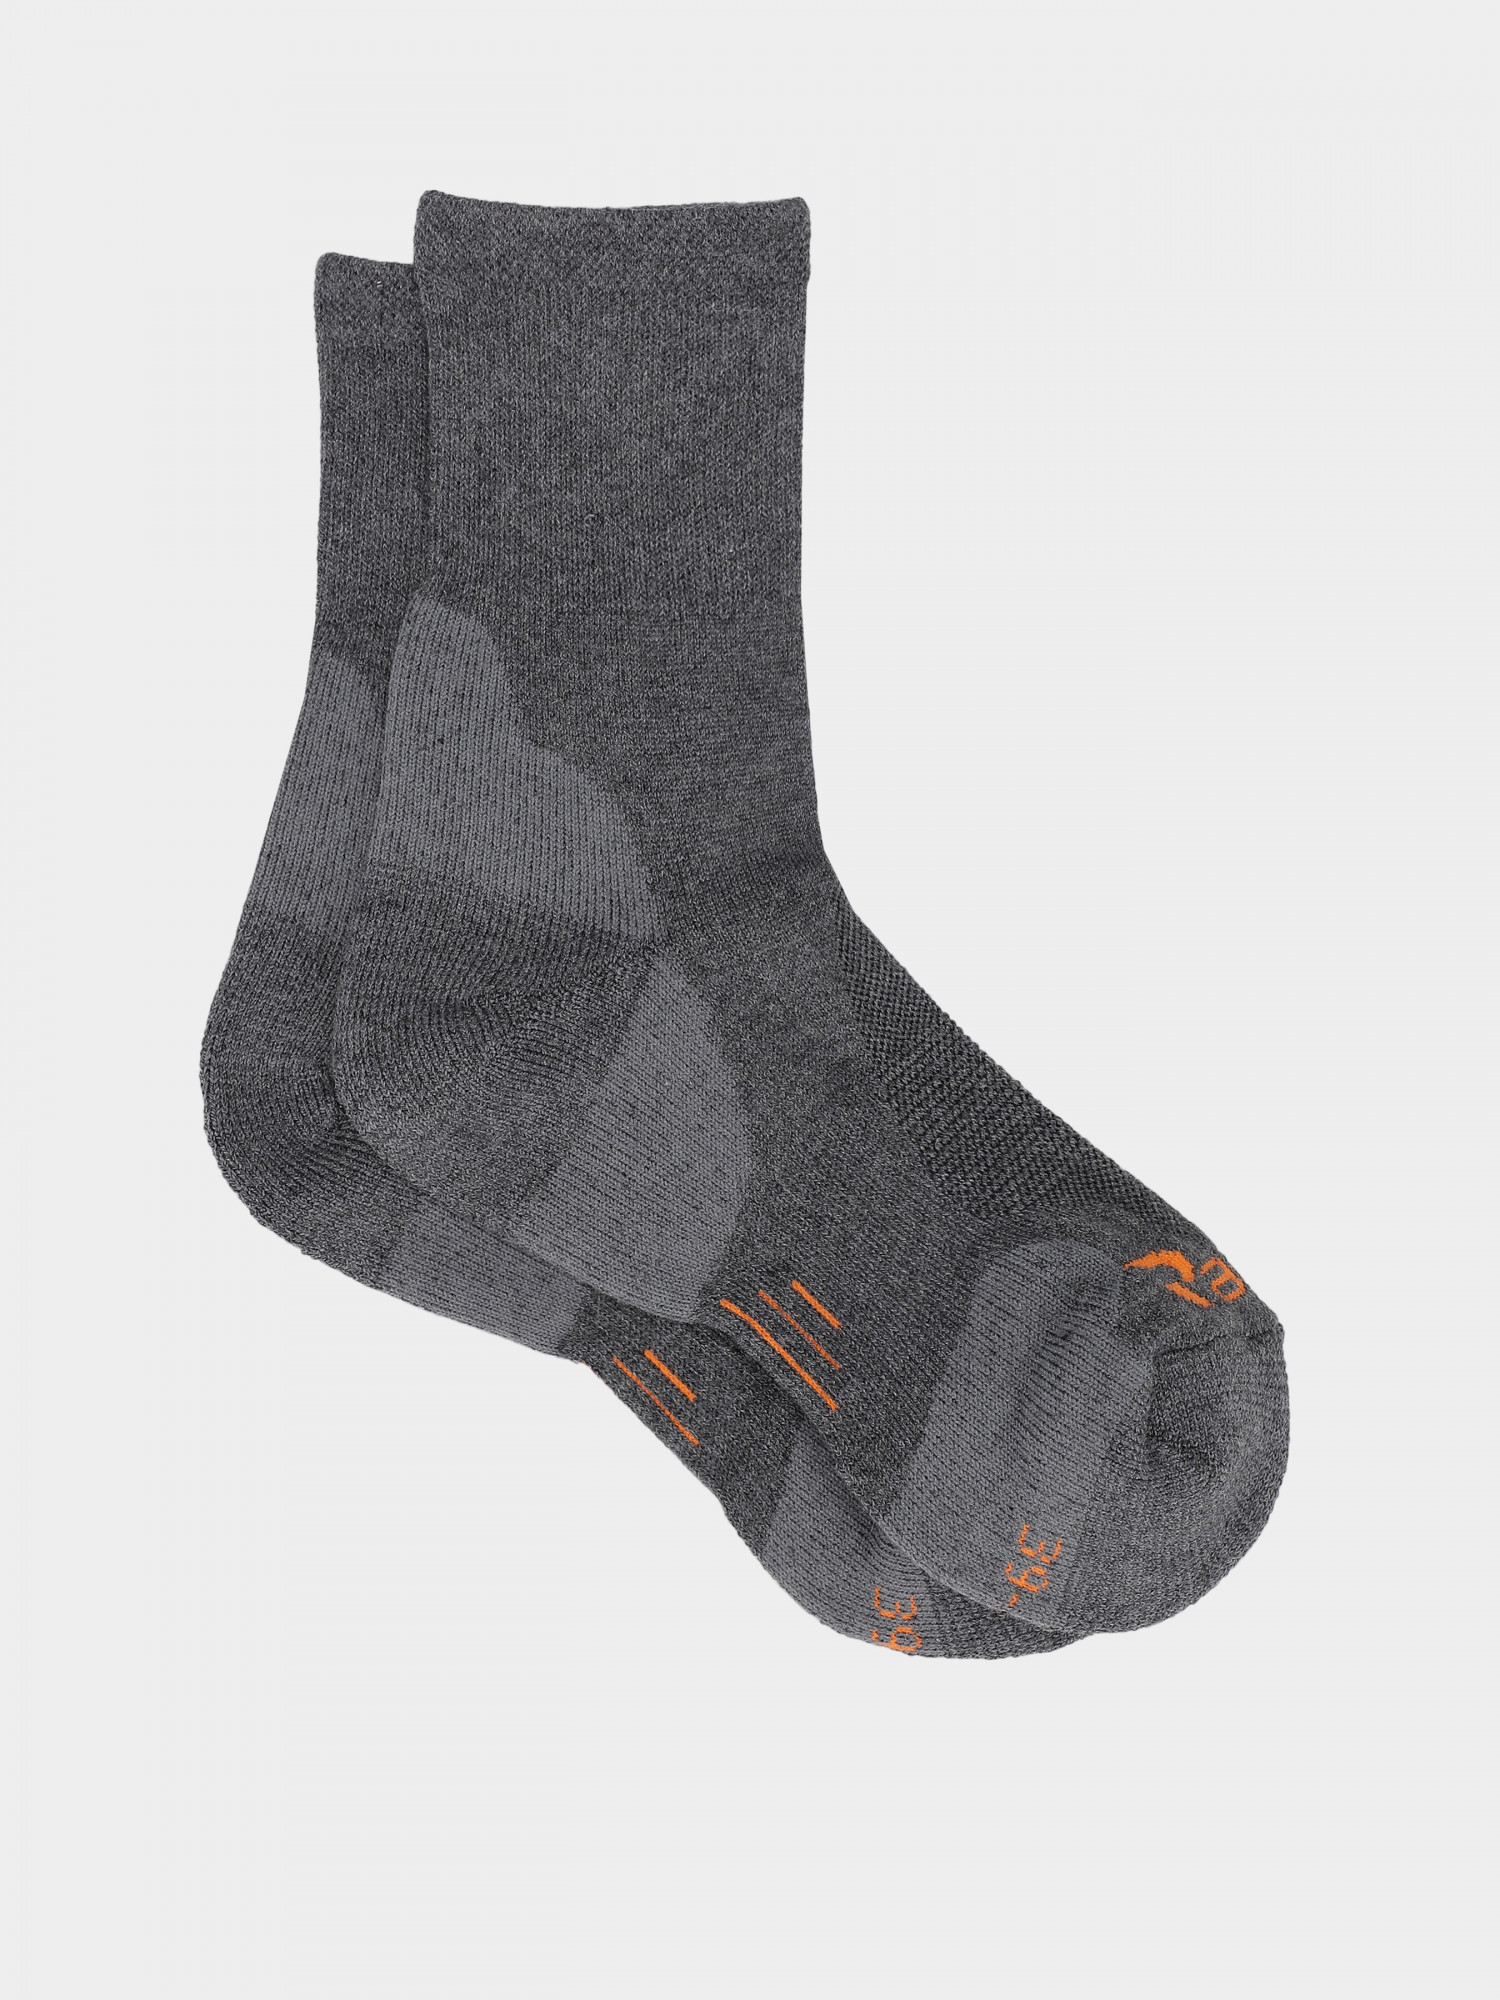 Шкарпетки Radder Hiking темно-сірі 252405-020 изображение 3